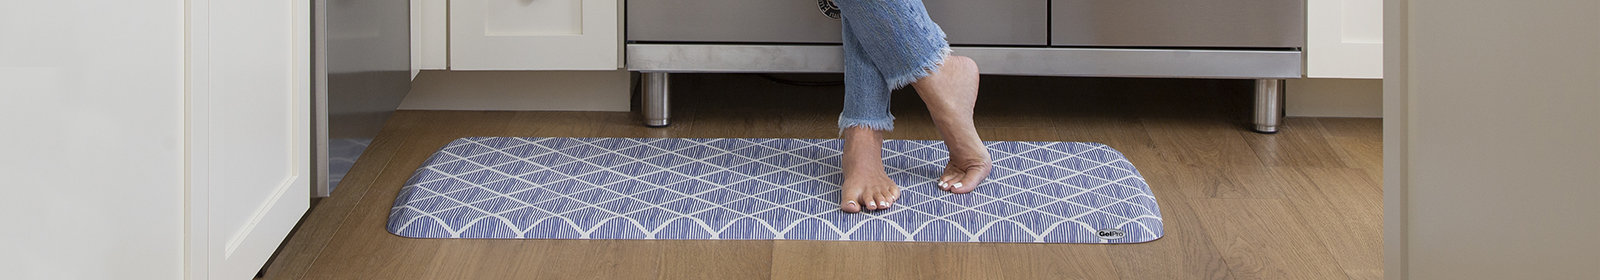 GelPro Elite Comfort Kitchen Floor Mat Linen 20 in. x 72 in. Truffle